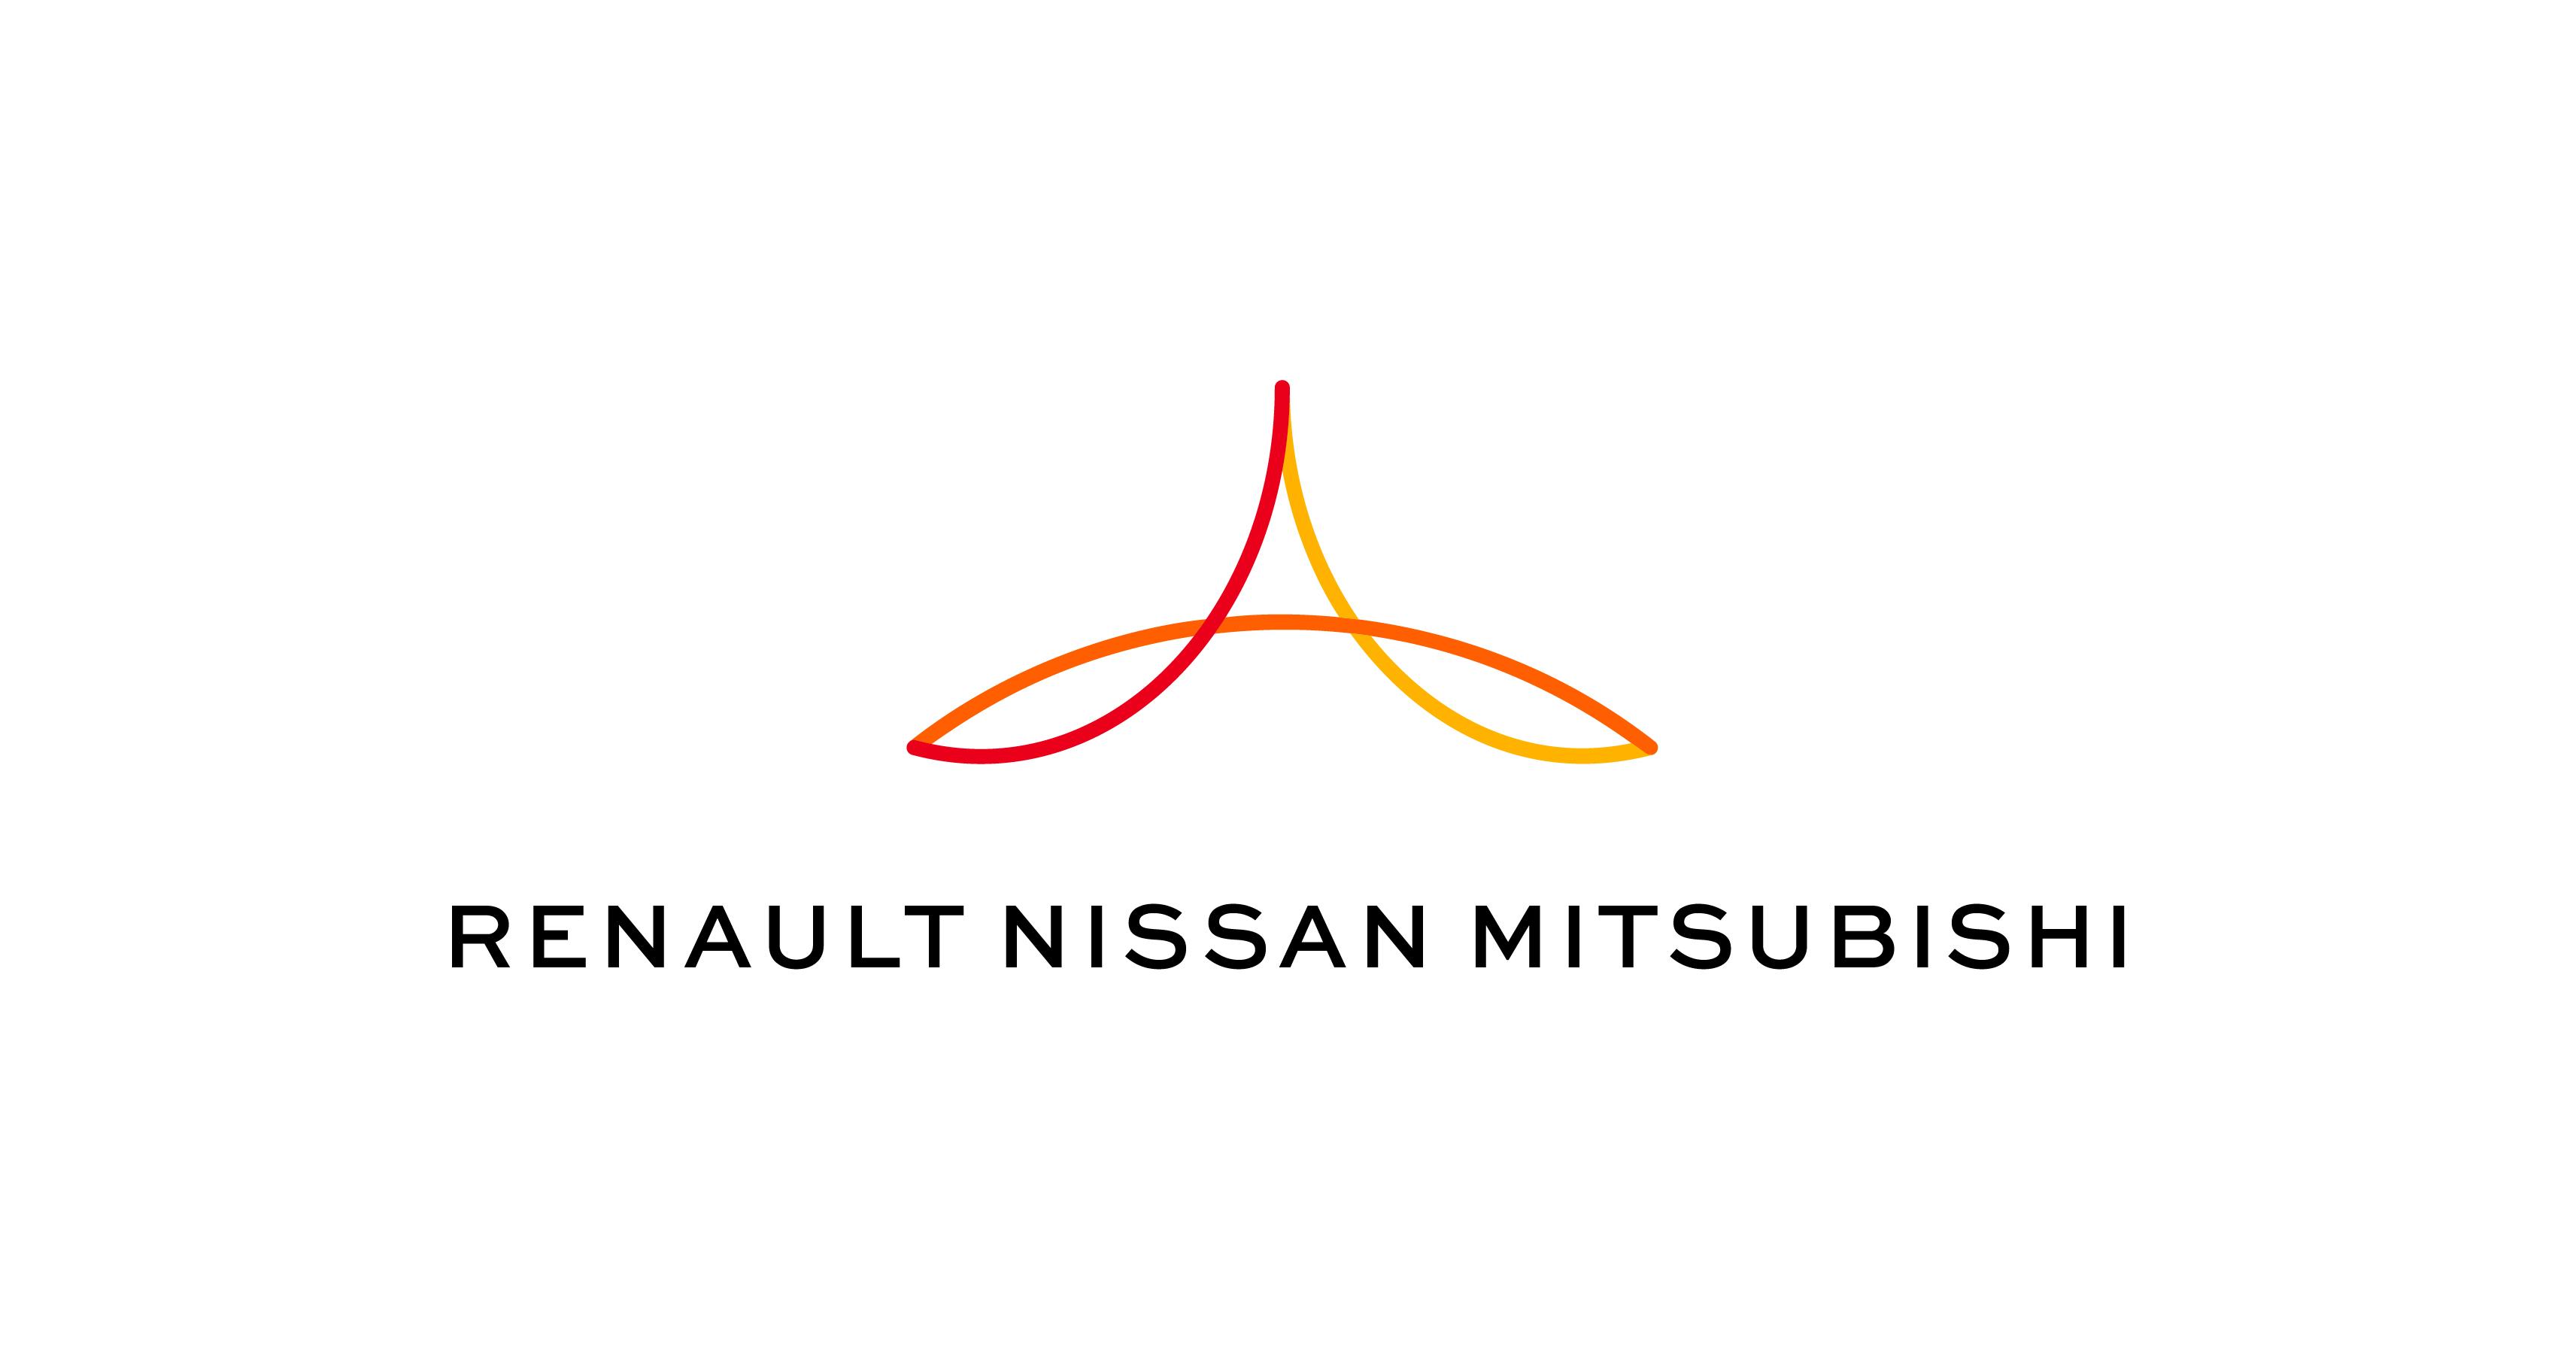 La Alianza Renault-Nissan-Mitsubishi fortalece su modelo de negocios y su estructura de gestión